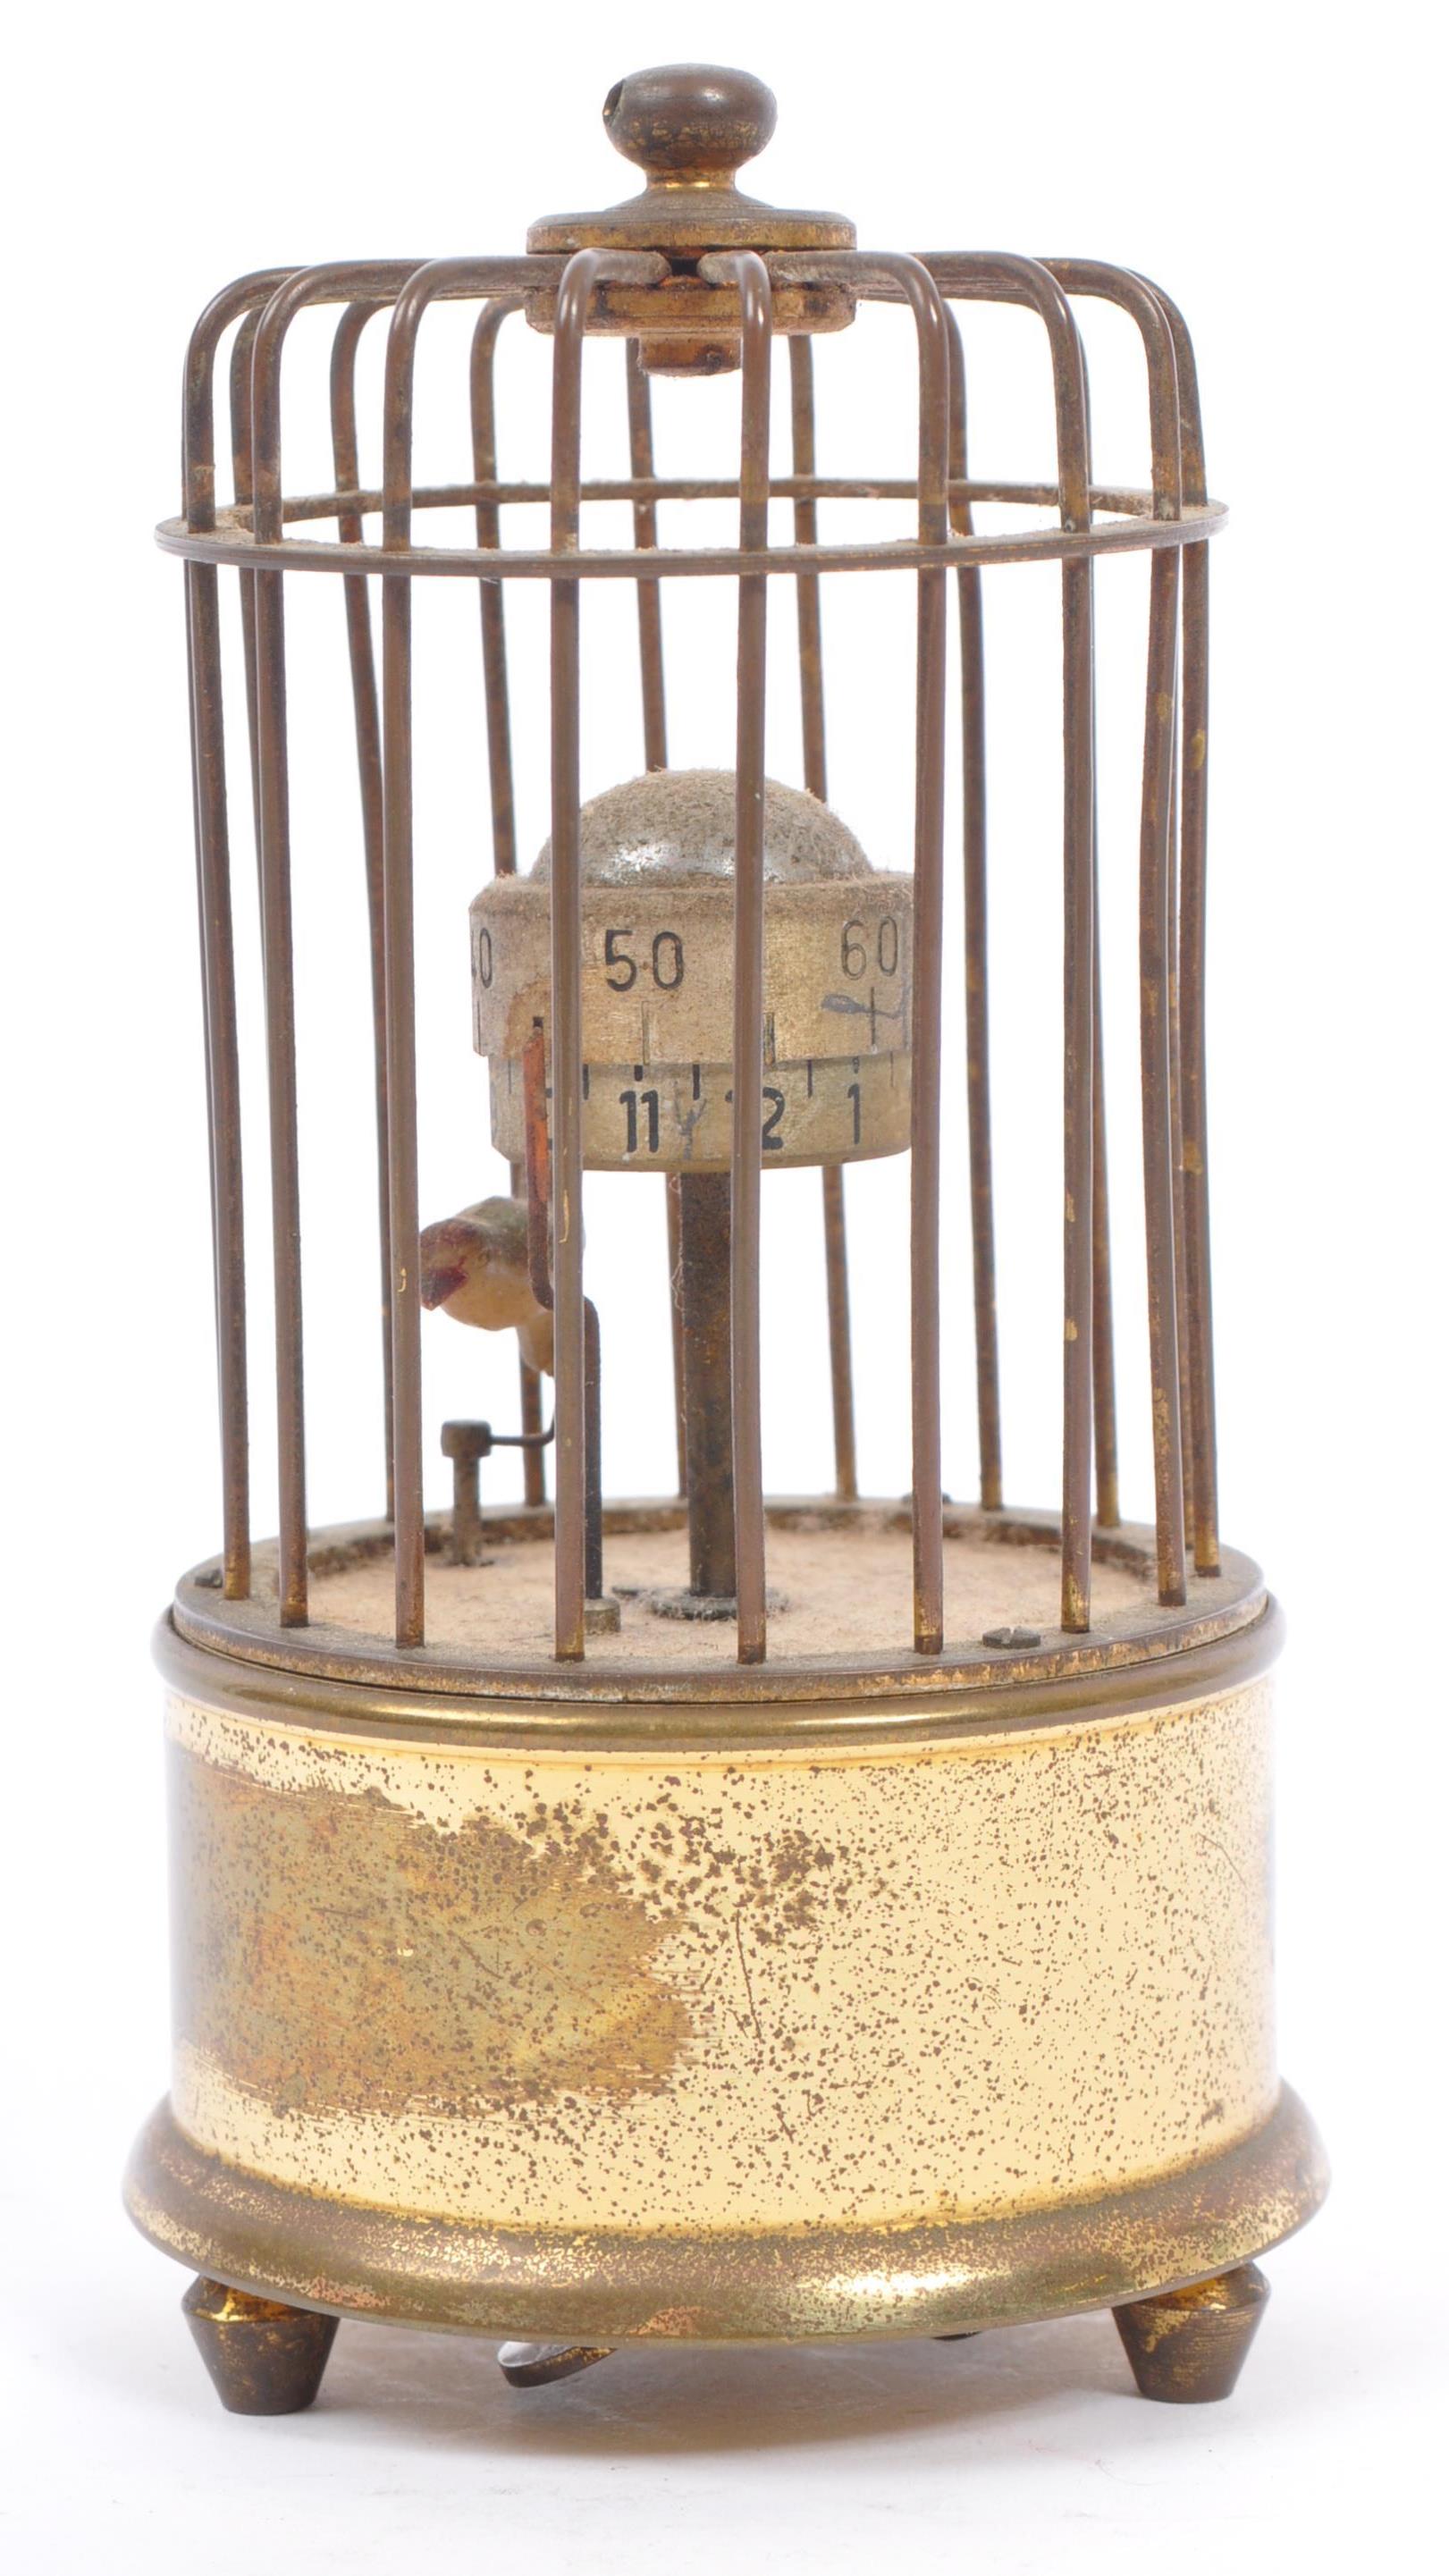 1950S MID CENTURY GERMAN KAISER ORBITAL BIRD CAGE CLOCK - Image 2 of 6